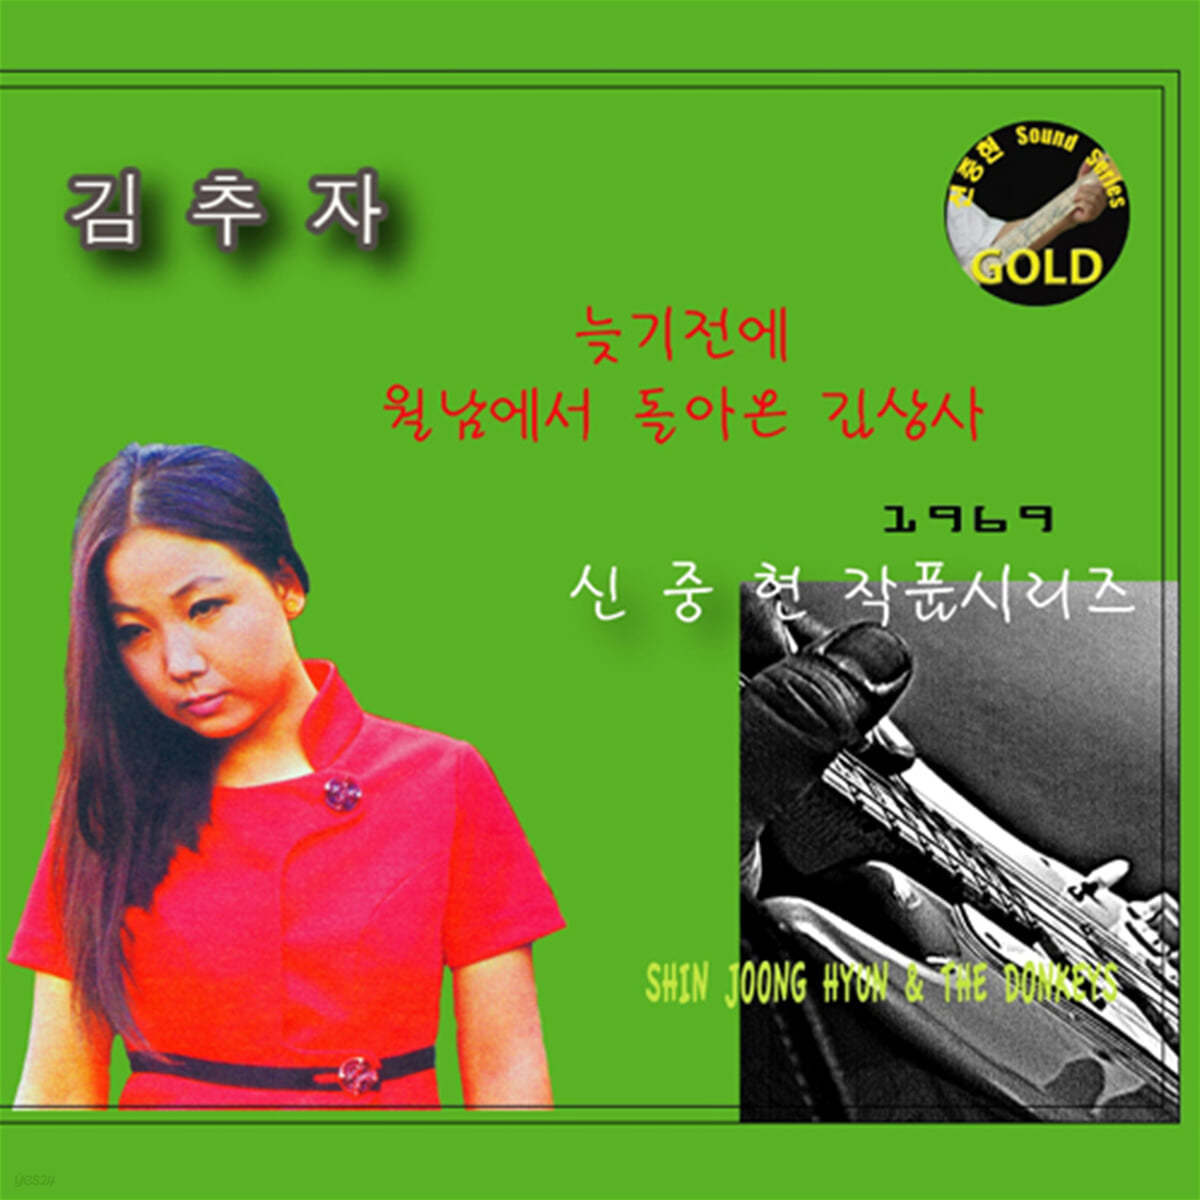 김추자 - 늦기전에, 월남에서 돌아온 김상사 (신중현 마스터피스 골드 시리즈)